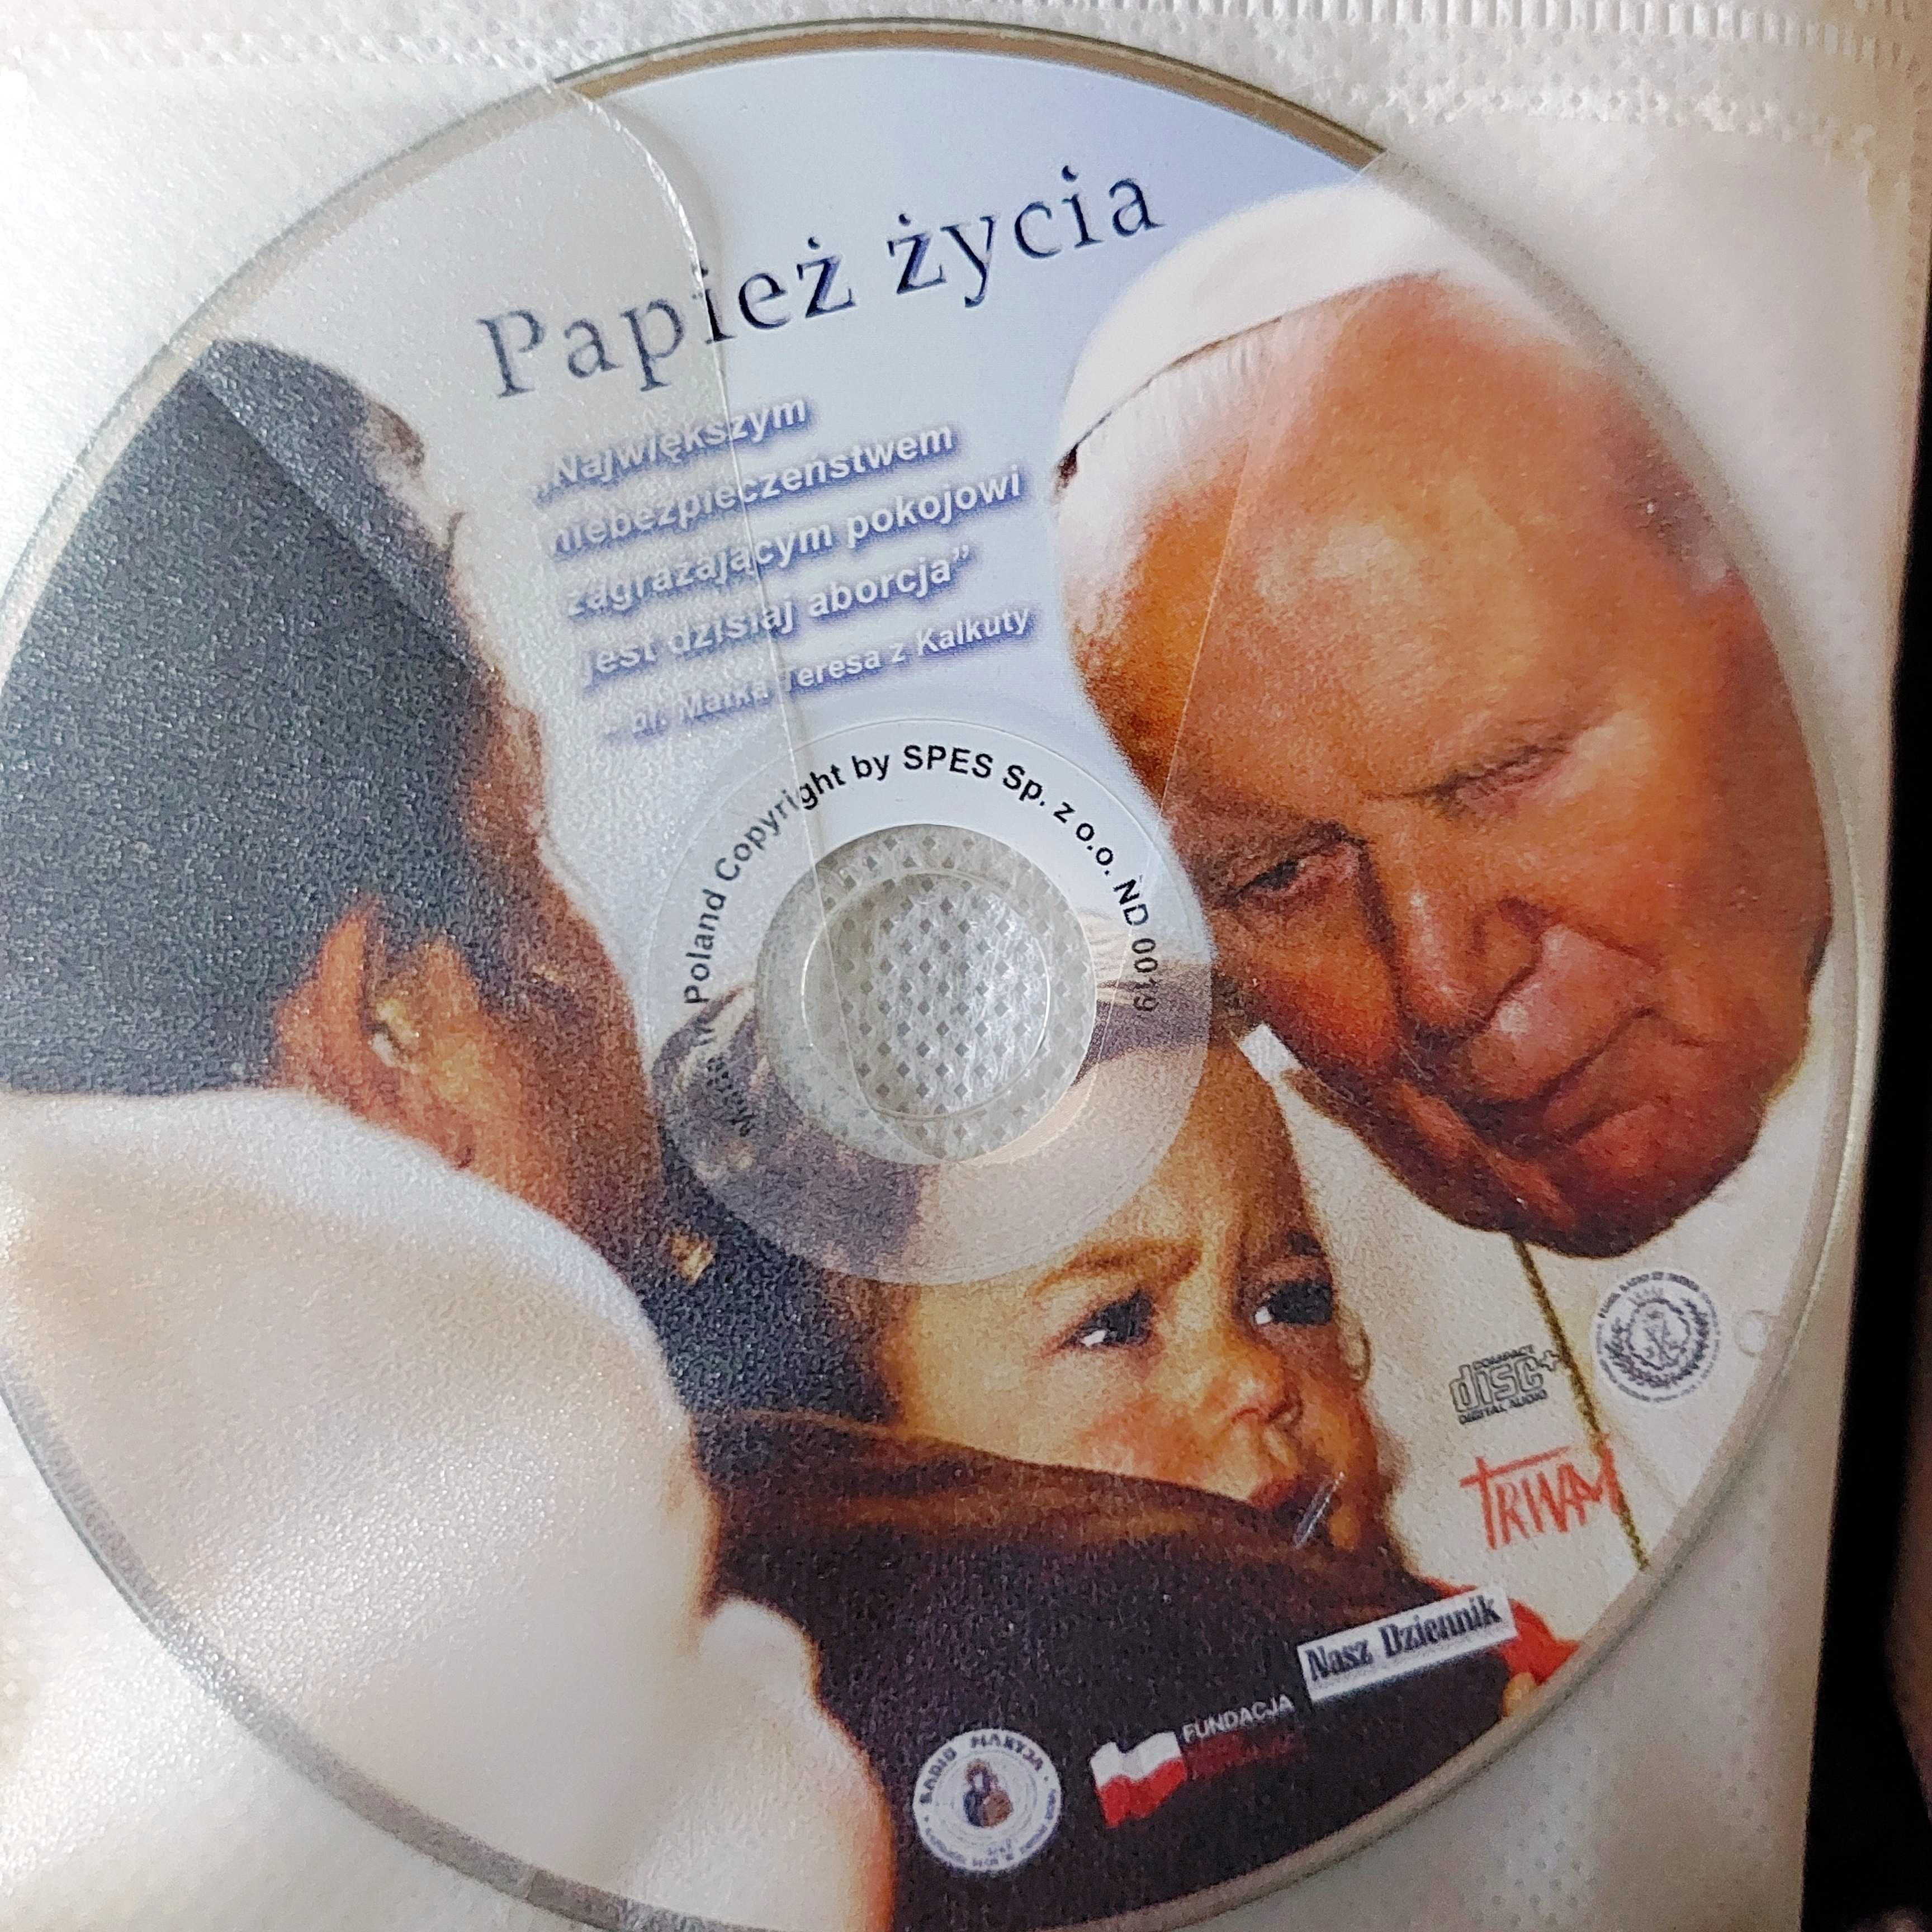 Papież życia: Jan Paweł II | audio CD